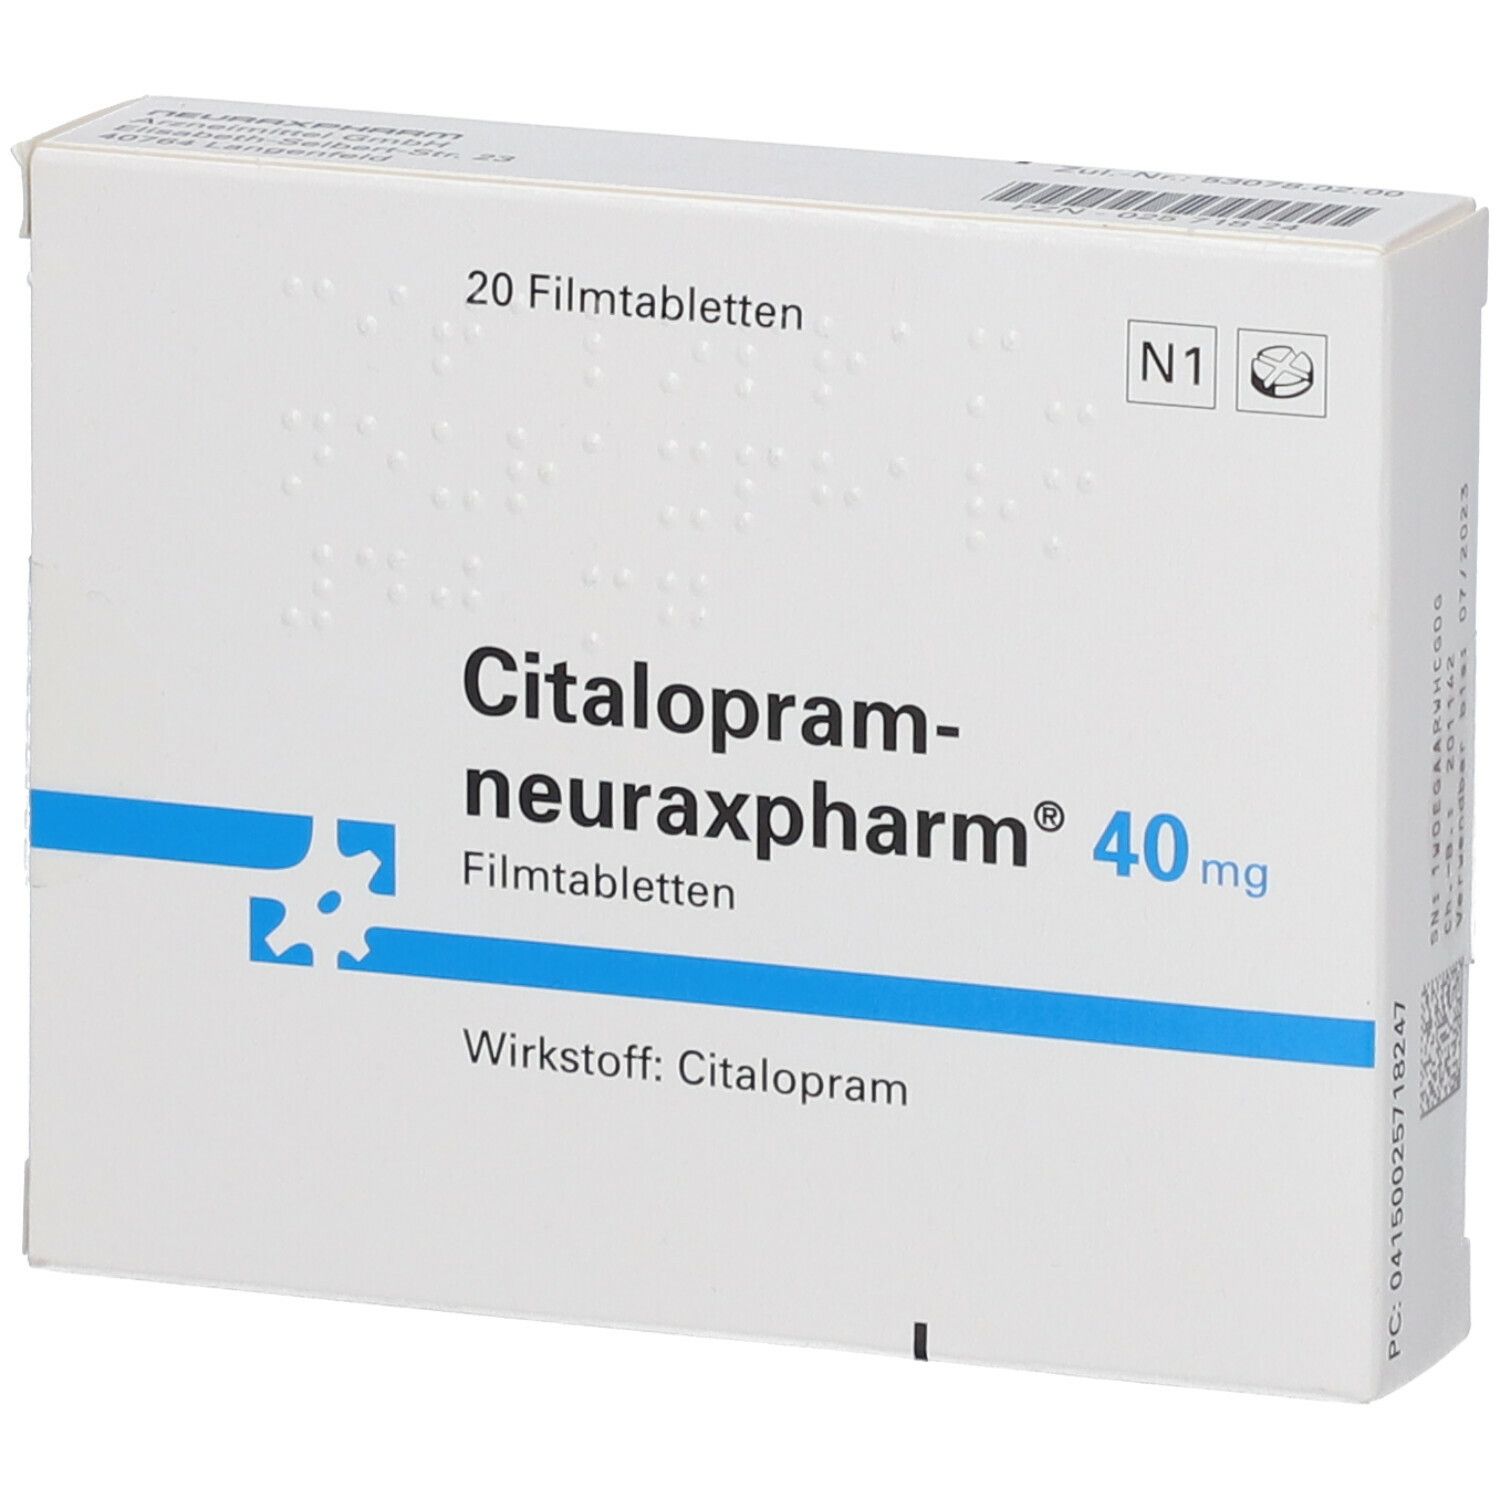 Citalopram-neuraxpharm® 40 mg